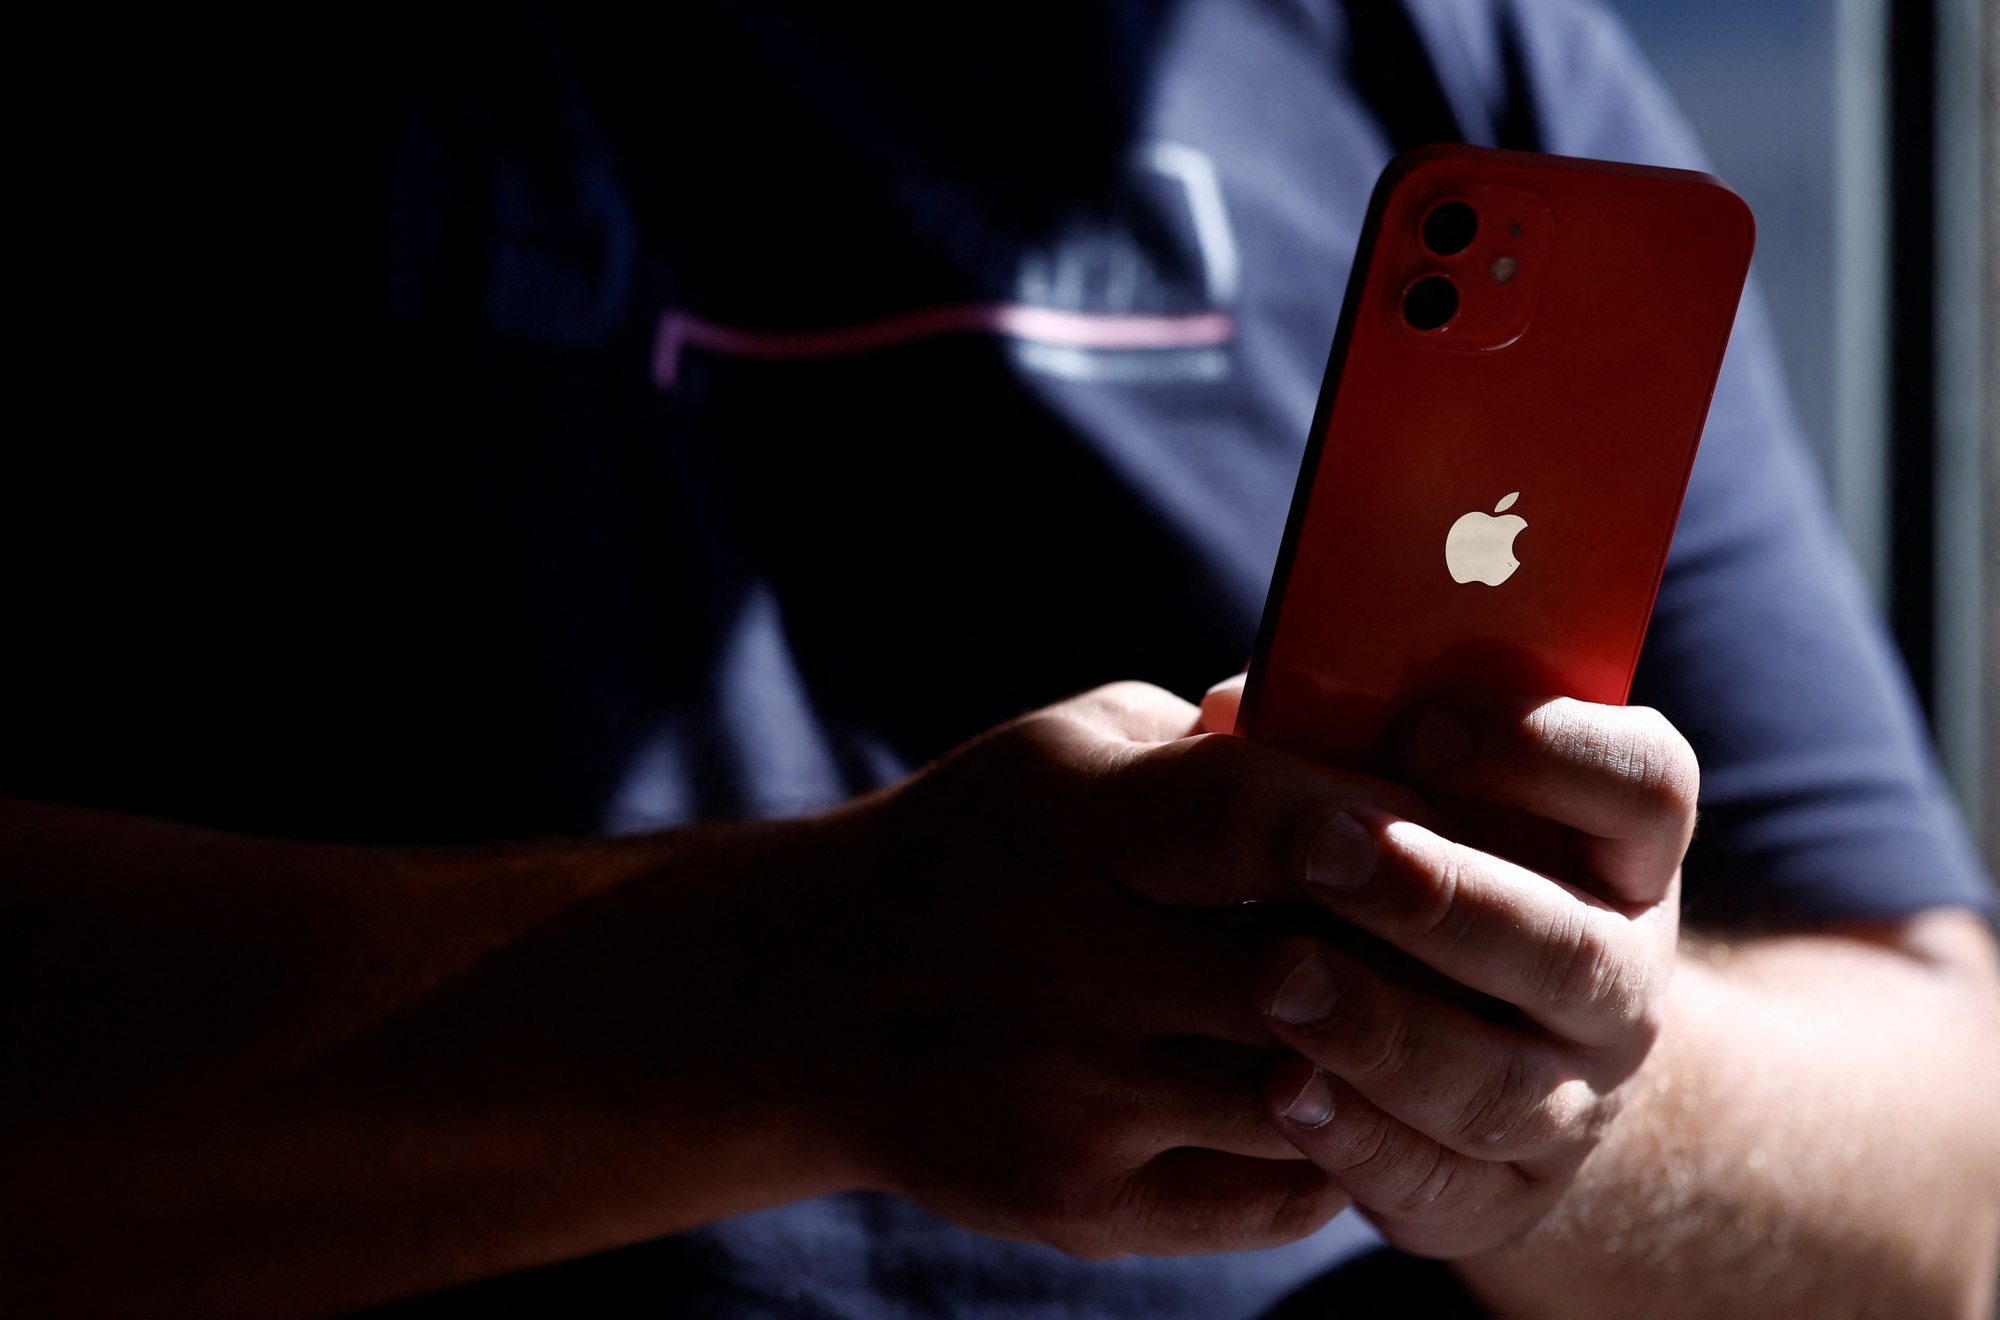 Pháp cáo buộc iPhone 12 vi phạm tiêu chuẩn bức xạ của EU, Apple phủ nhận - Ảnh 1.